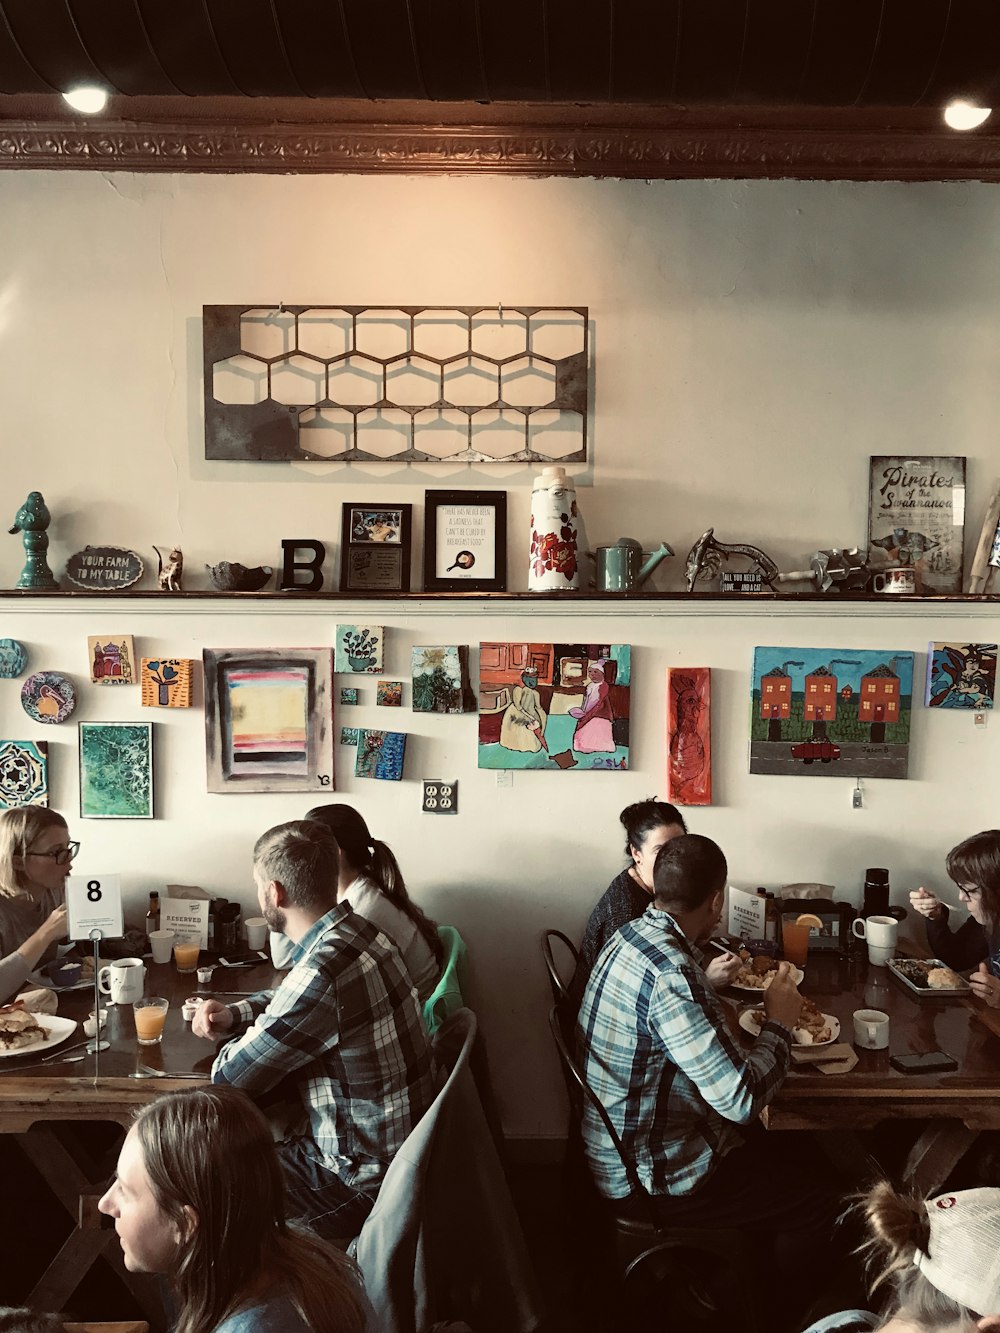 Un gruppo di persone sedute a un tavolo con le immagini sul muro